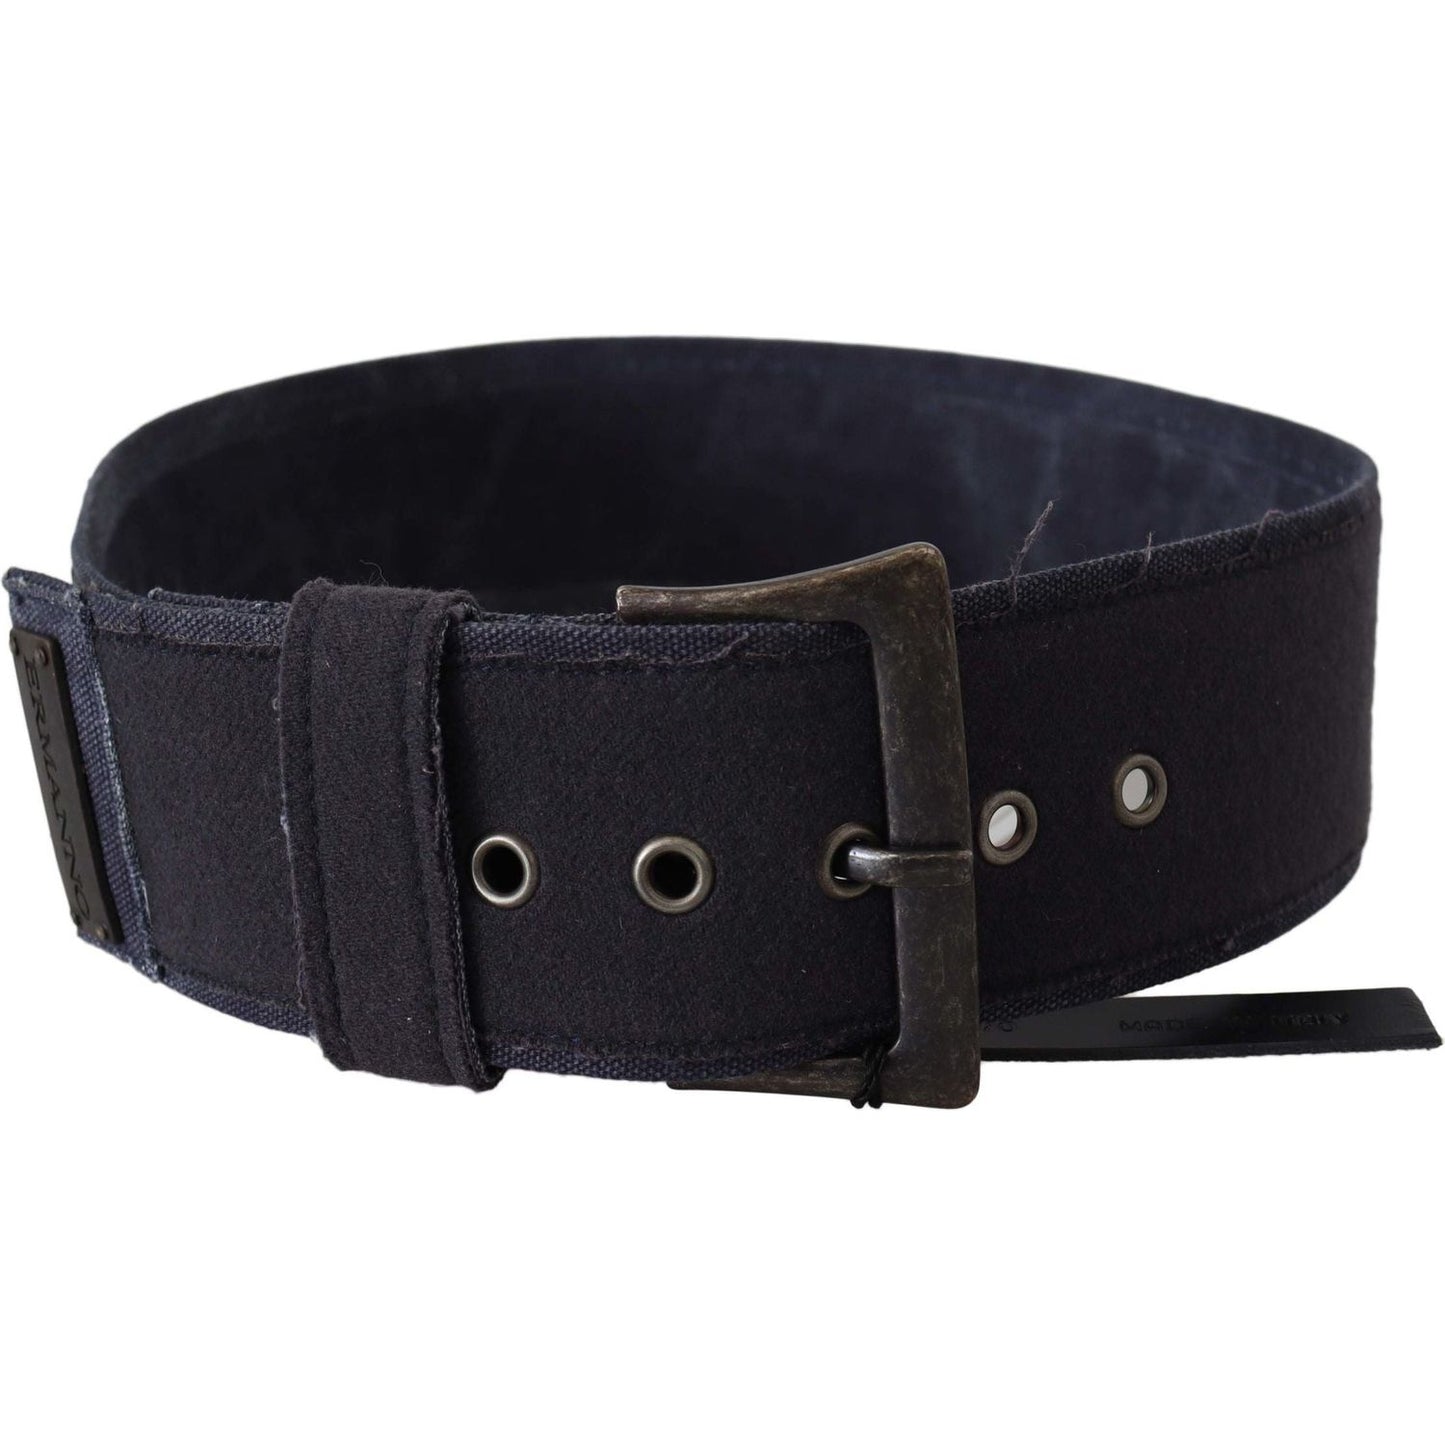 Ermanno Scervino Elegant Black Leather Classic Belt Belt black-leather-wide-buckle-waist-luxury-belt